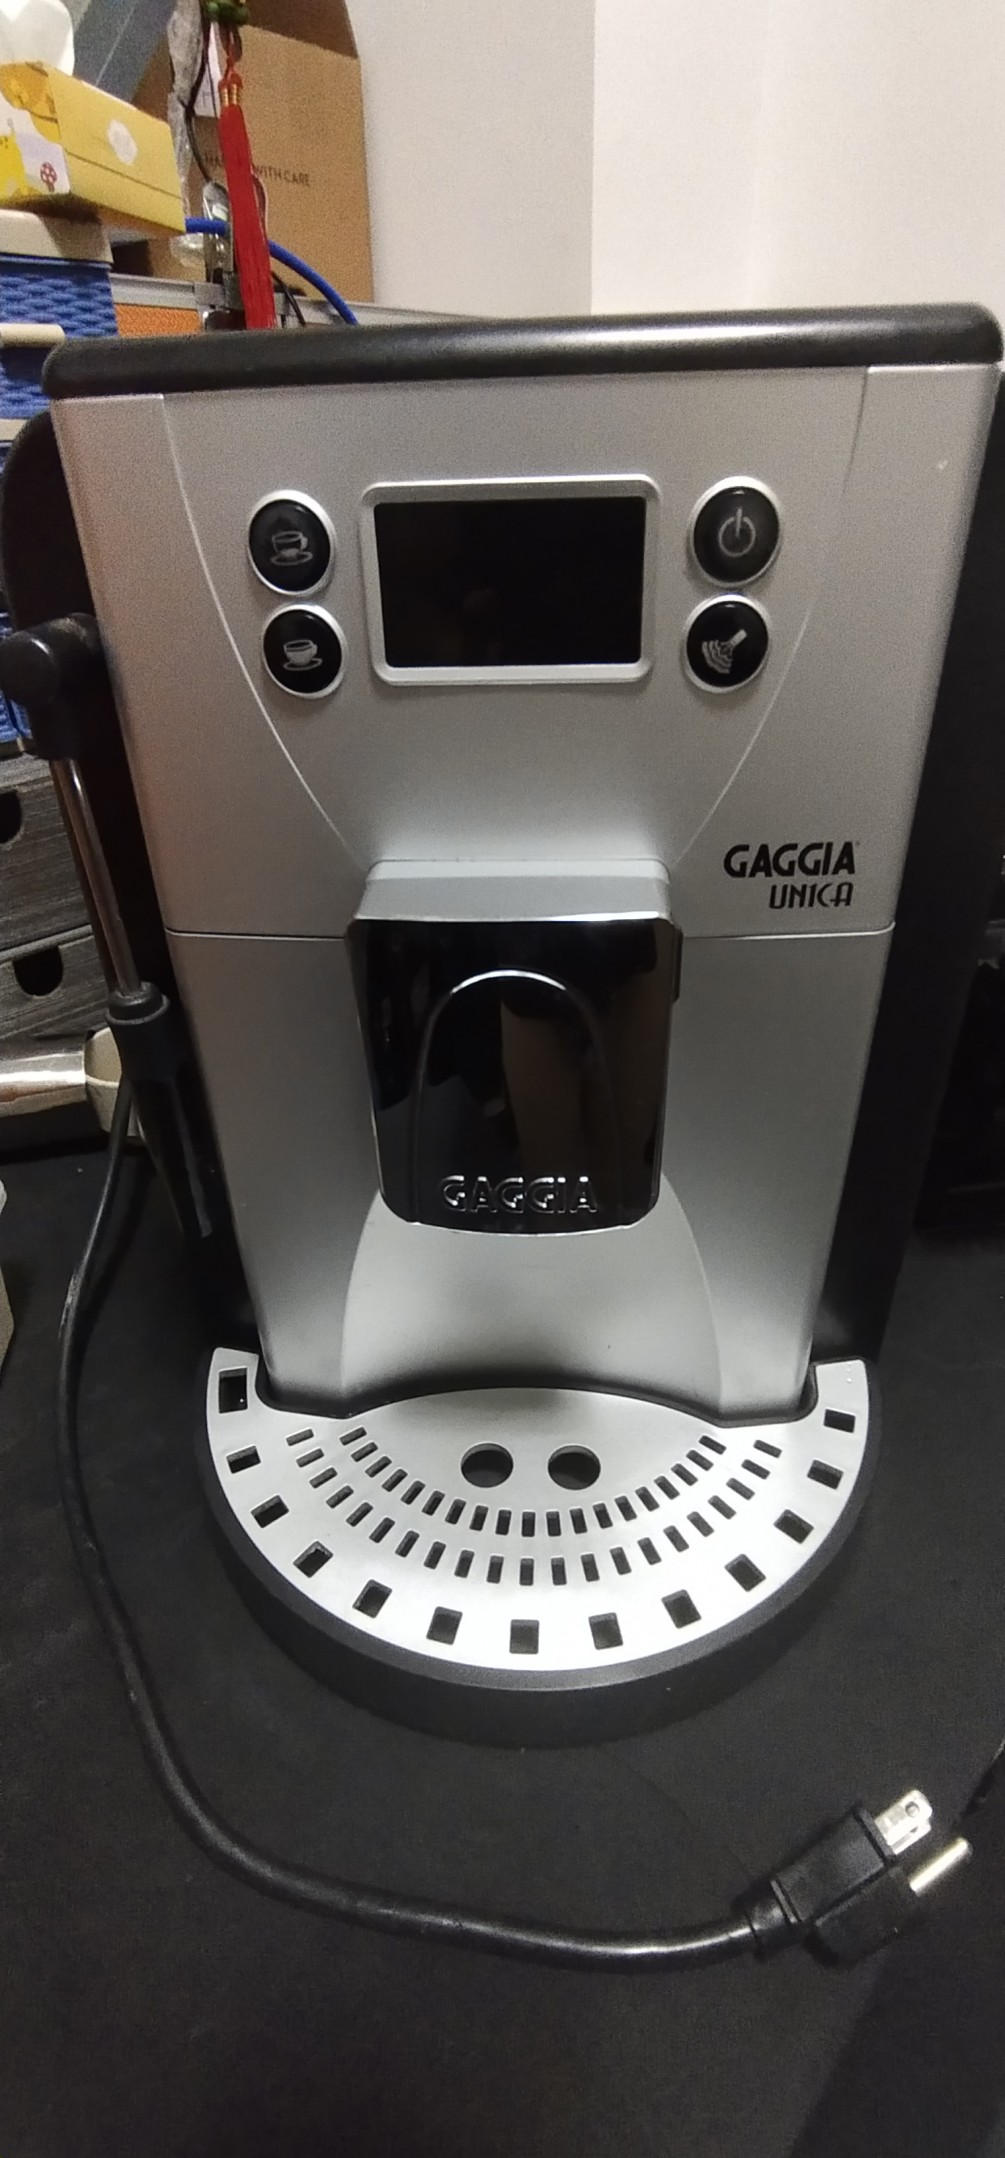 gaggla-全自動咖啡-無法磨豆出咖啡維修處理